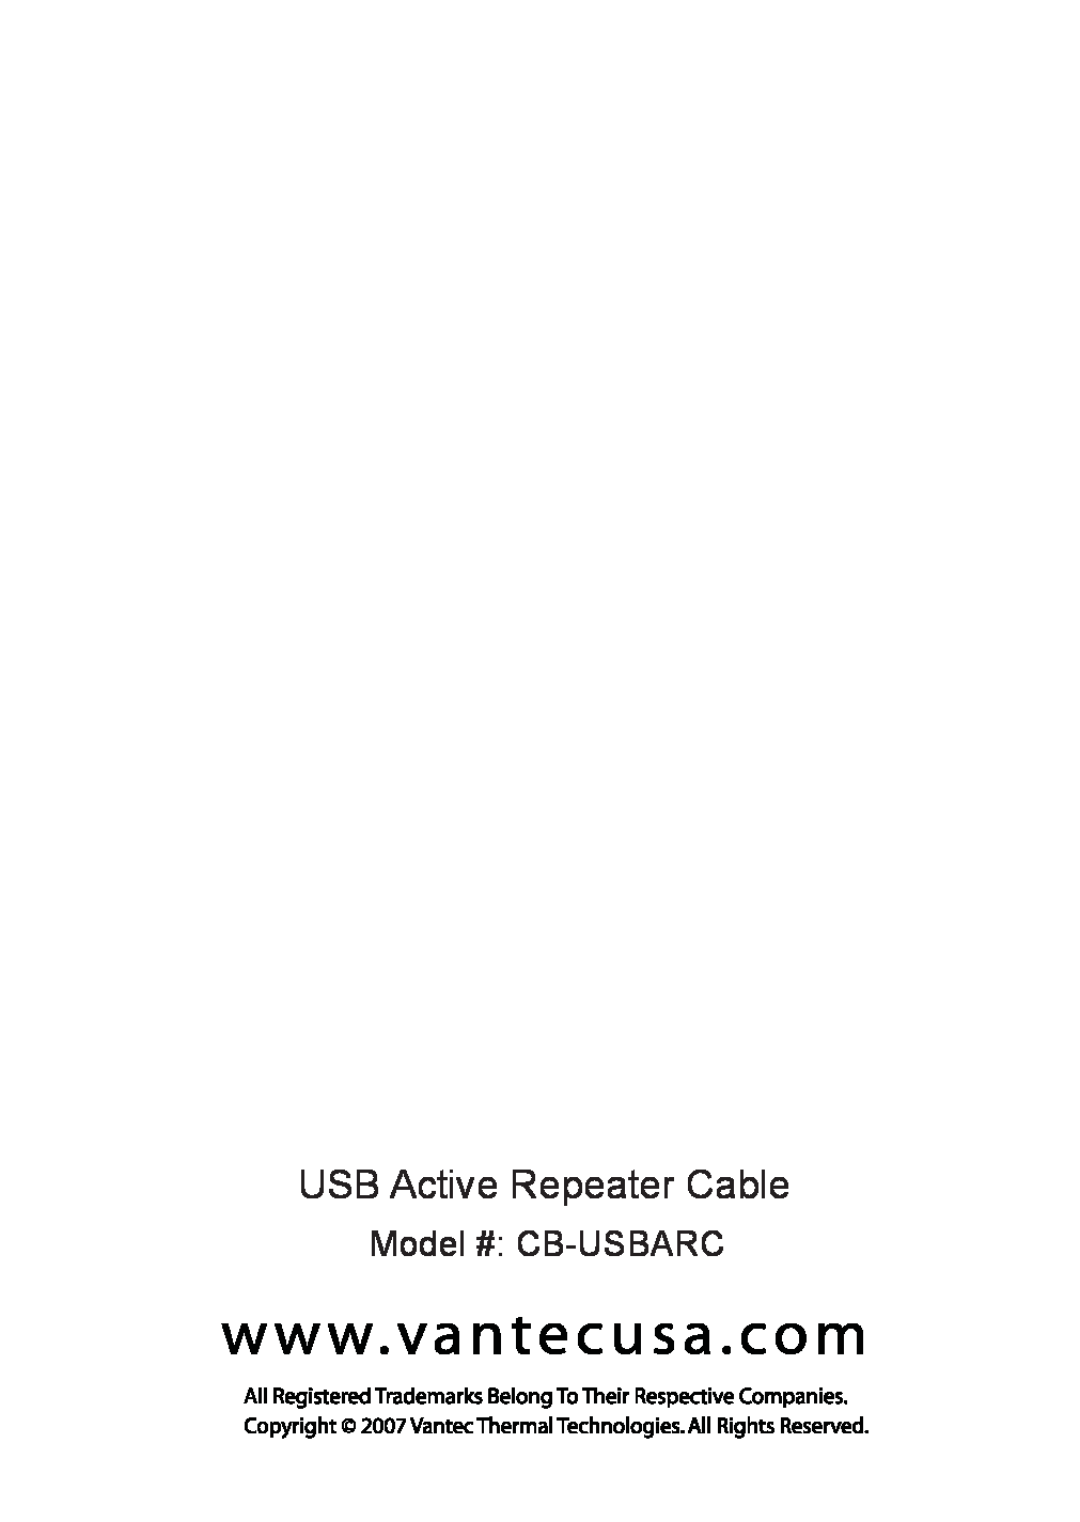 Vantec user manual USB Active Repeater Cable, Model # CB-USBARC 